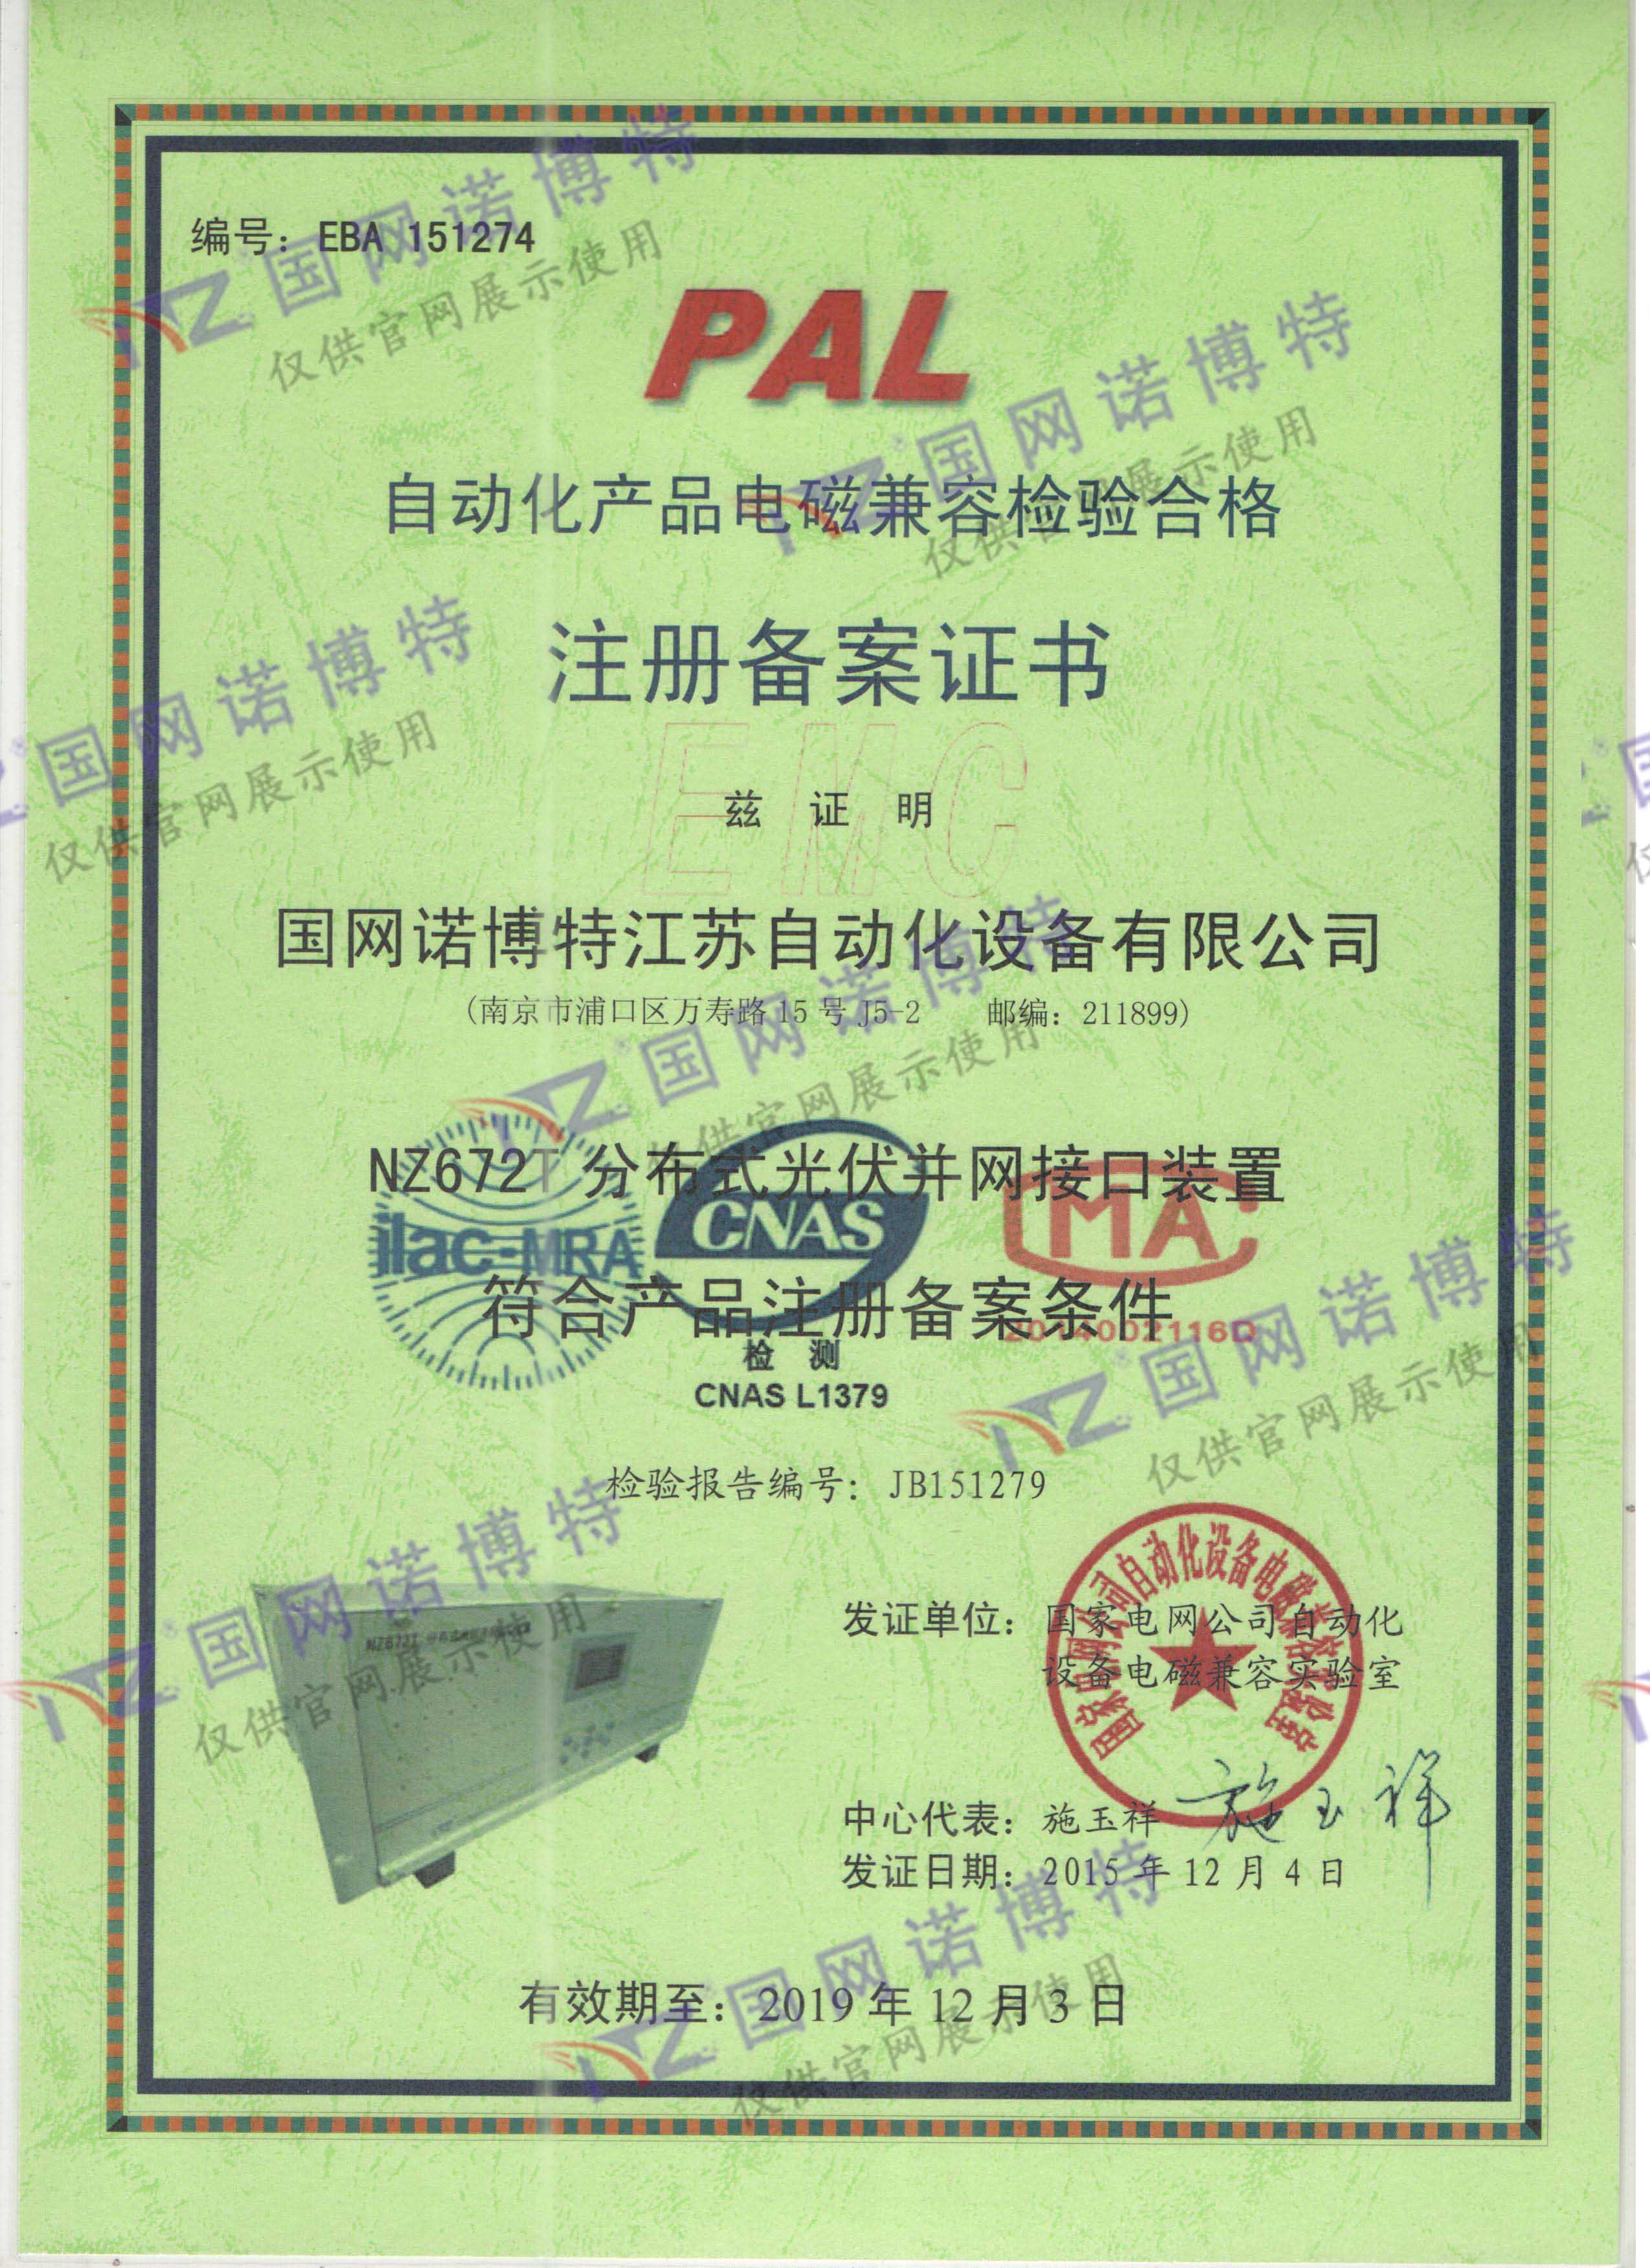 2019年-NZ672T PAL 证书 电磁兼容